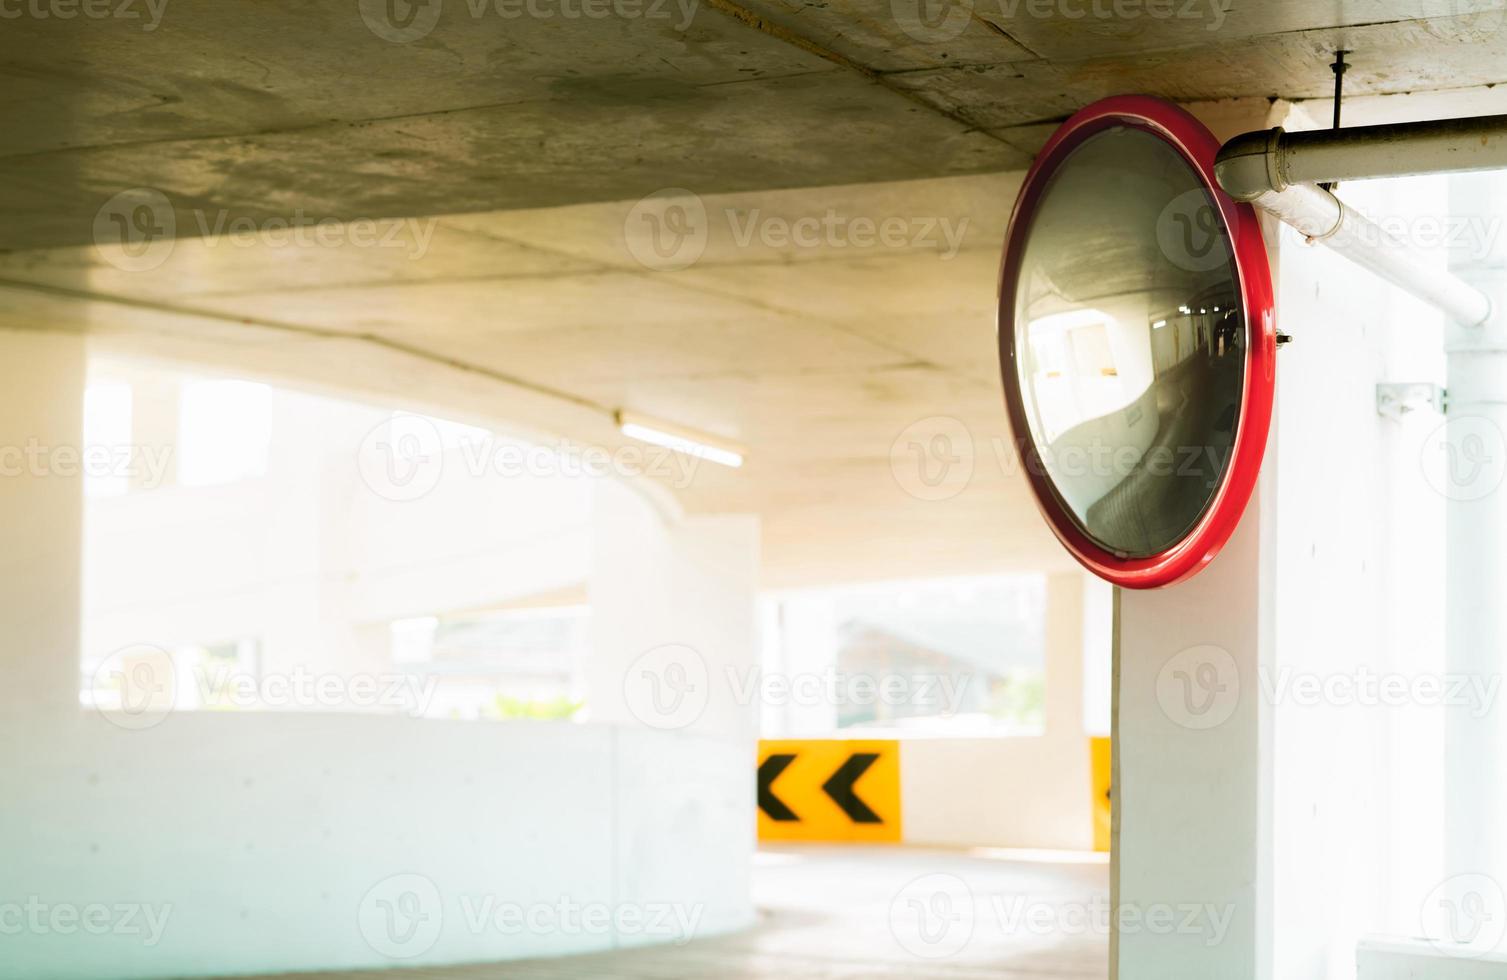 espejo de seguridad convexo en la curva del estacionamiento interior para reducir el riesgo de accidentes por esquina ciega o puntos ciegos. espejo de seguridad circular convexo en estacionamiento de varios niveles. tráfico interior convexo foto